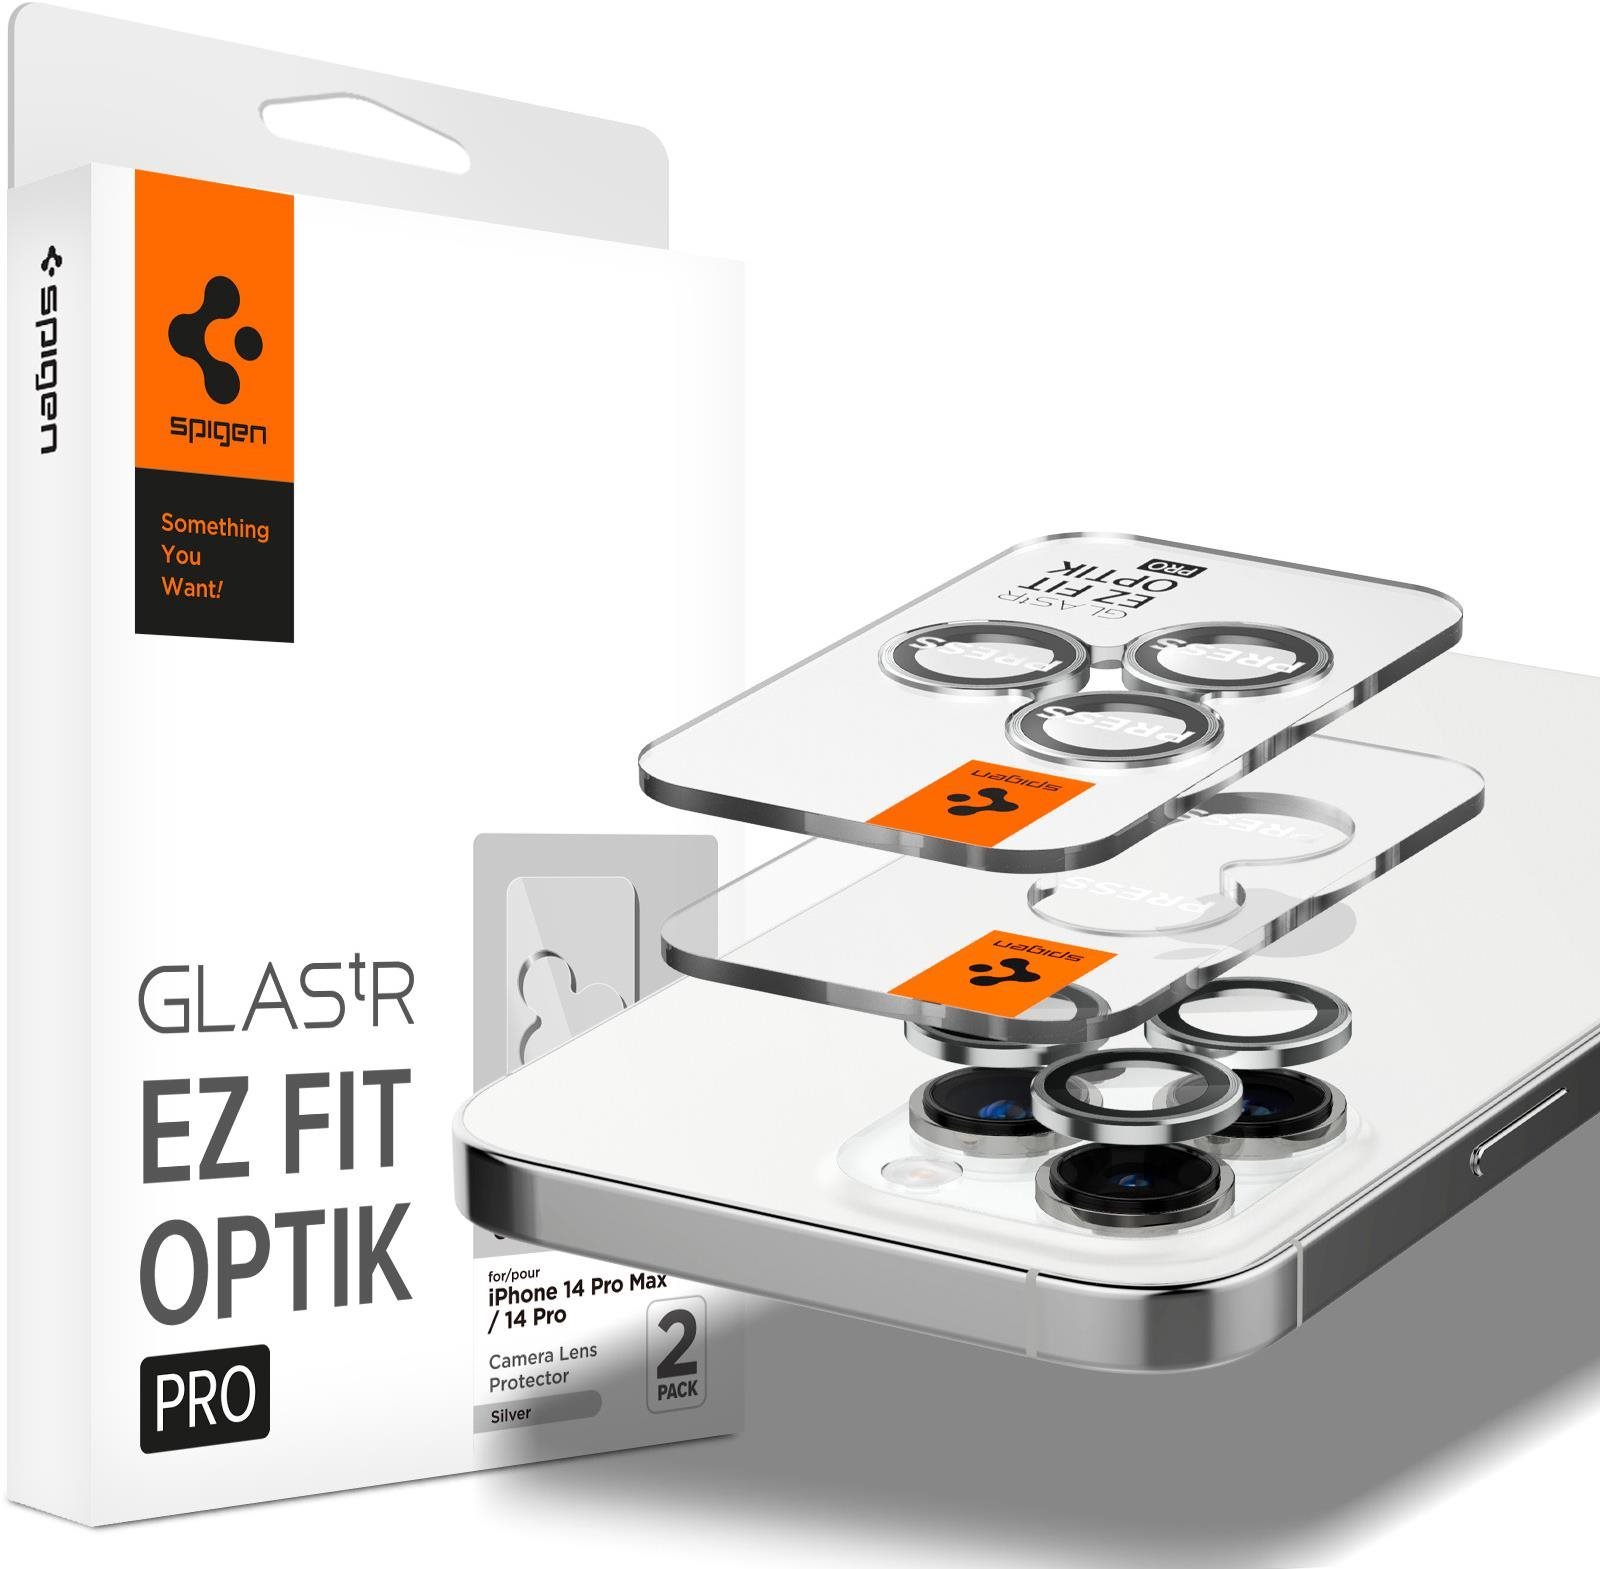 Kamera védő fólia Spigen Glass EZ Fit Optik Pro 2 Pack Silver iPhone 14 Pro/iPhone 14 Pro Max